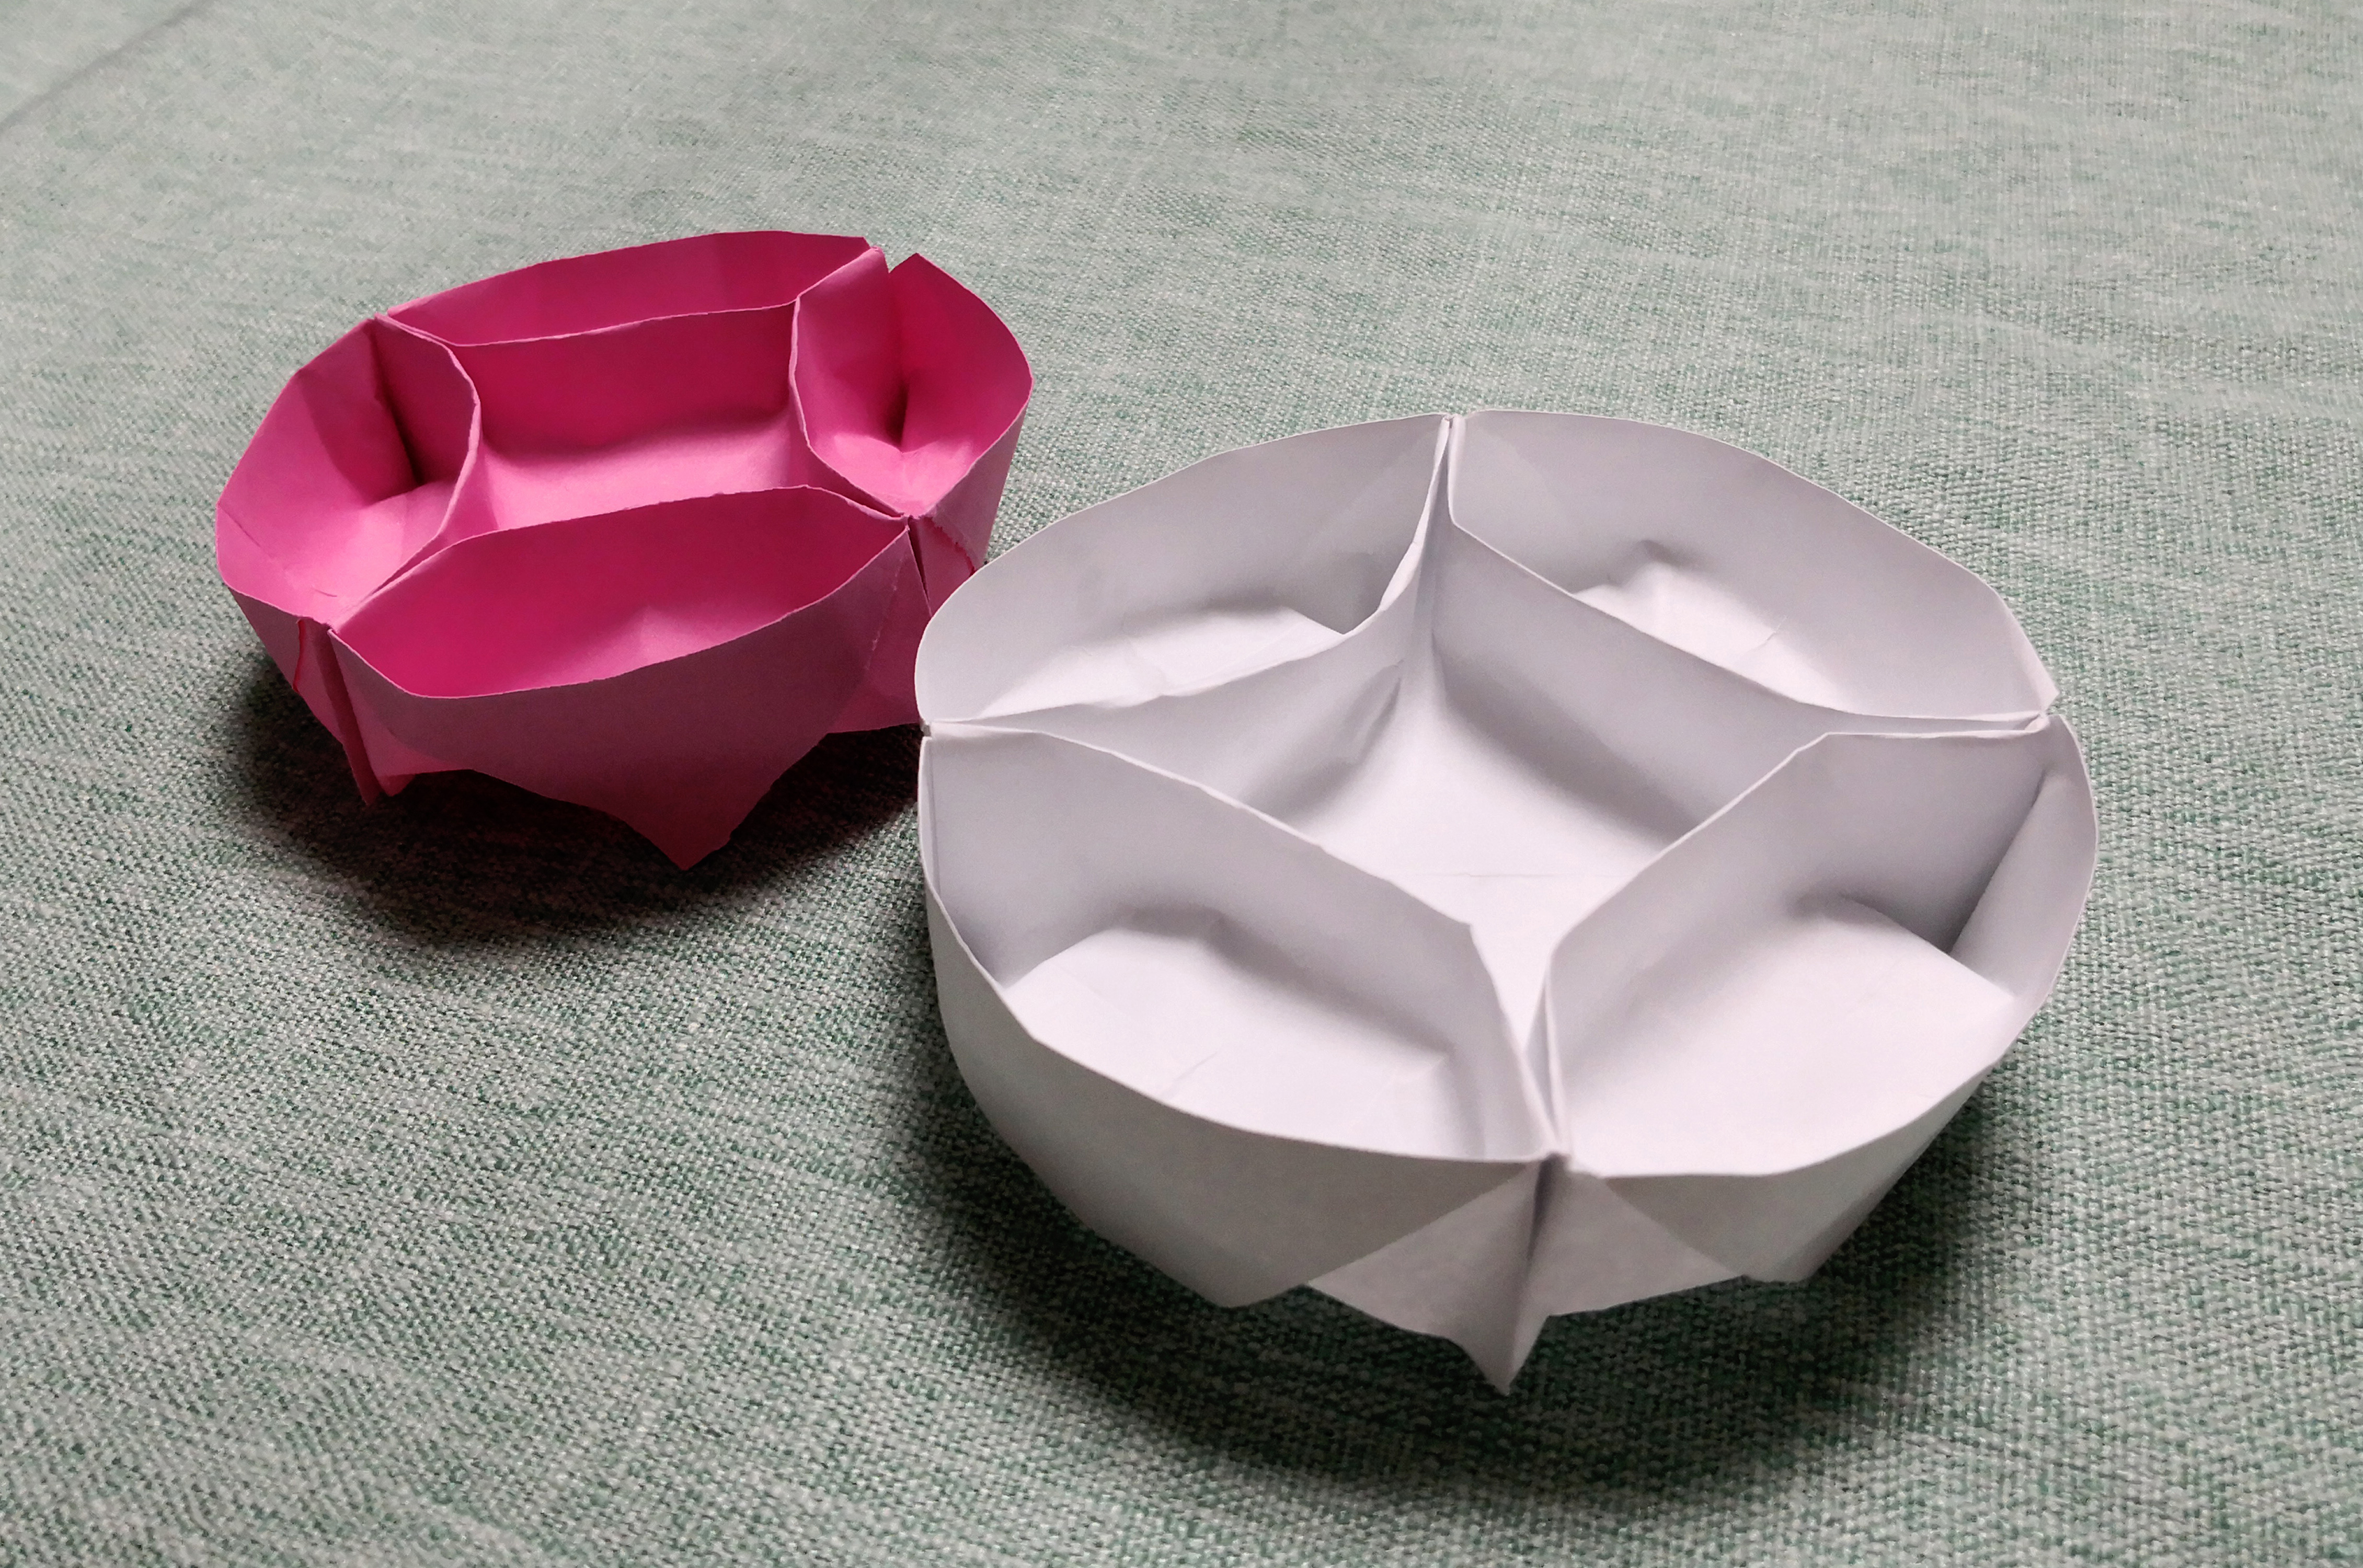 儿童手工折纸:diy手工制作,3分钟学会圆形糖果盒折法